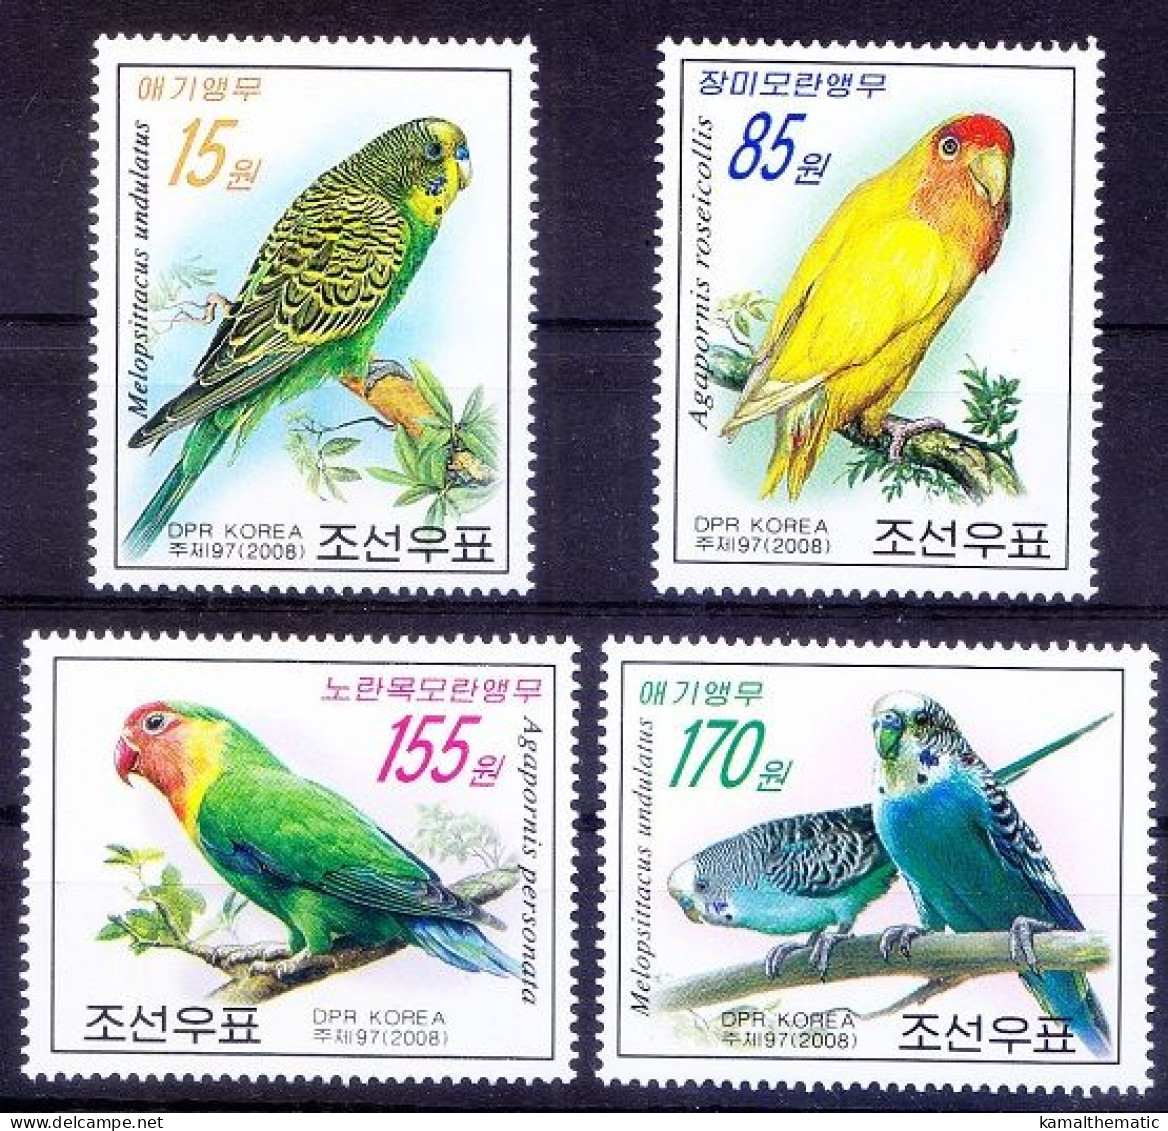 Parrots, Birds, Korea 2008 MNH 4v - Parrots